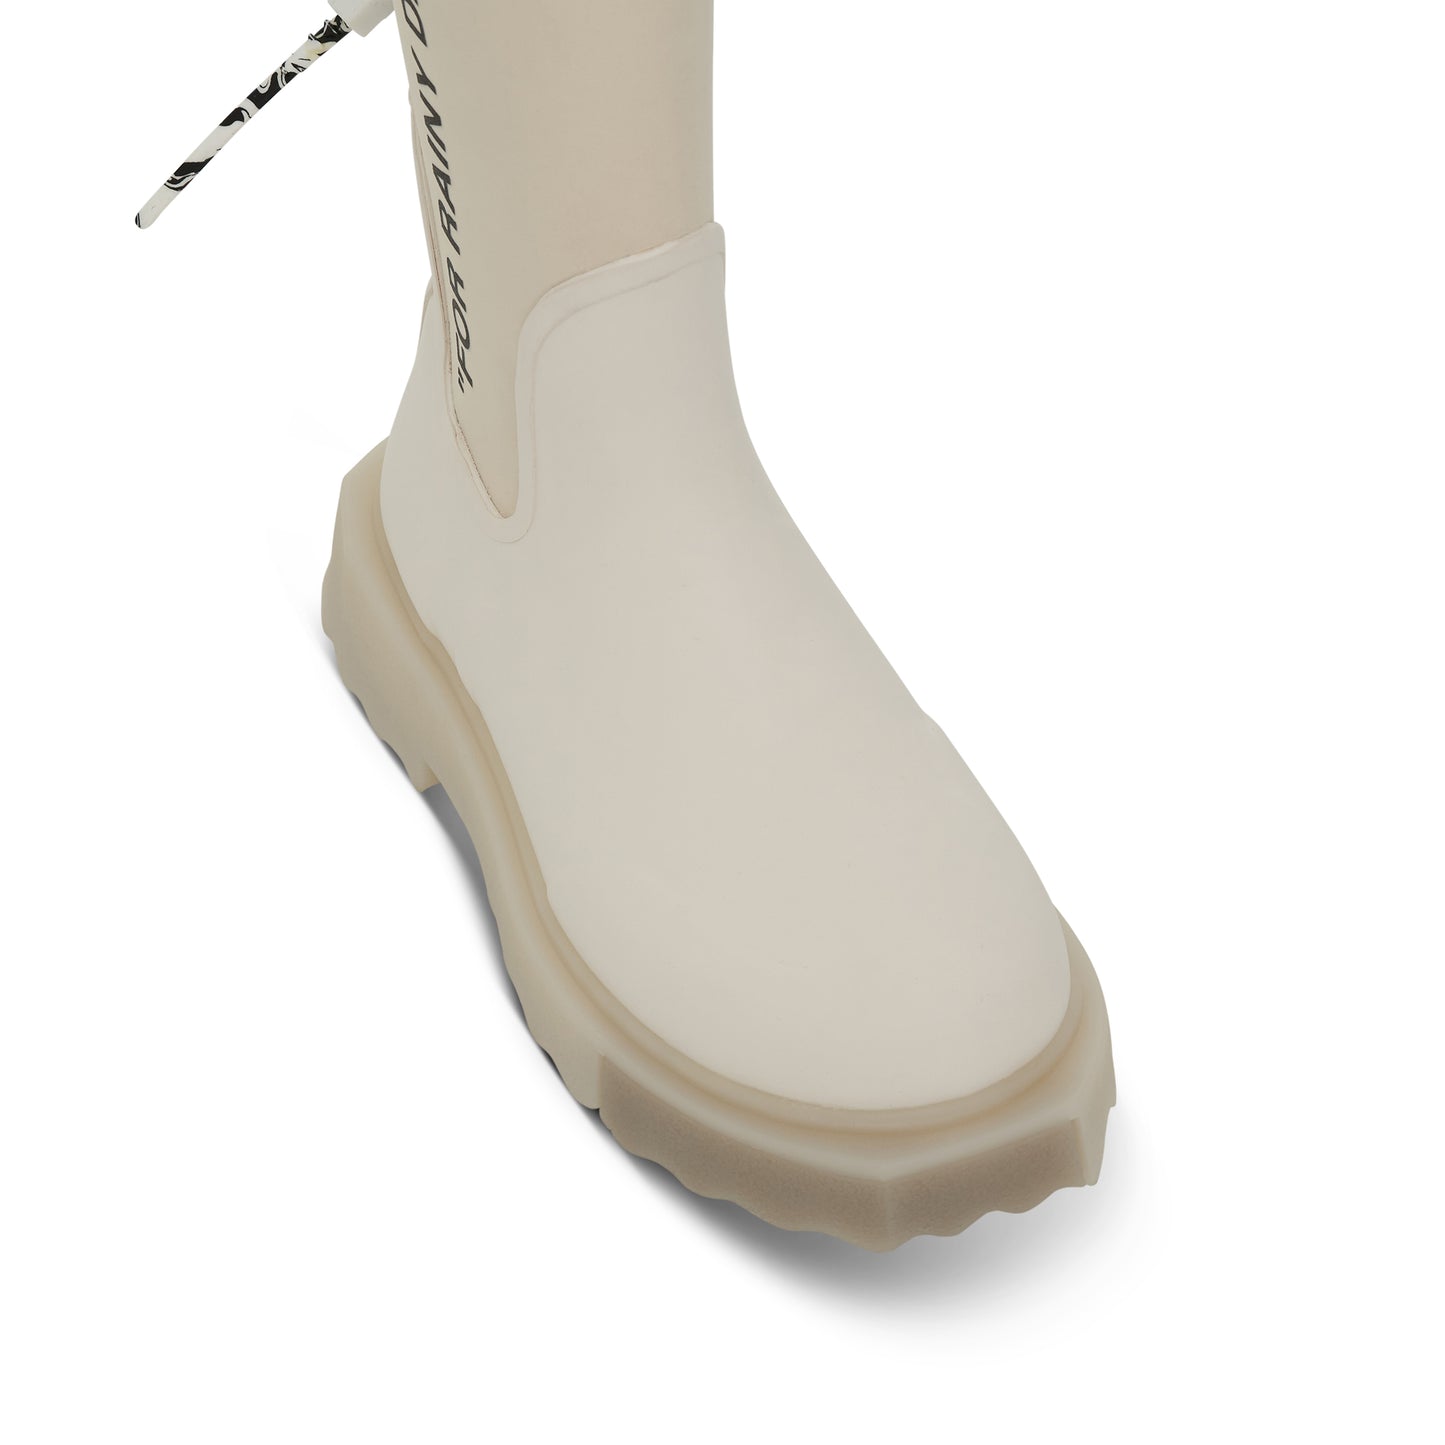 New Rubber Neoprene Boot in White